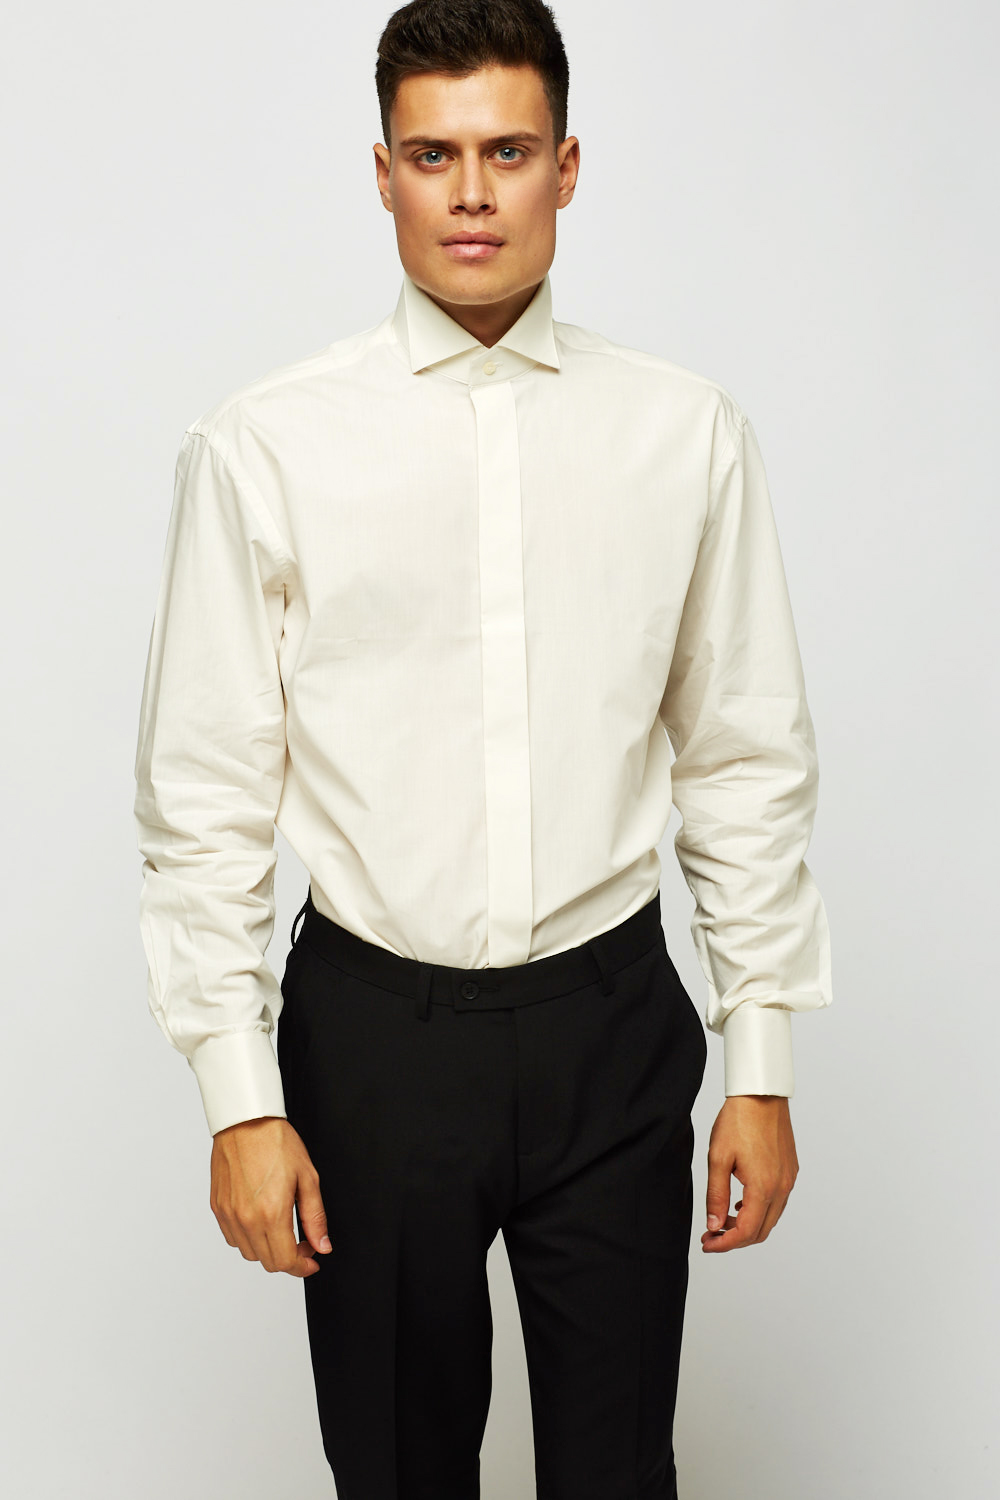 Cotton Blend Mens Extra Tall Shirt - Just $7